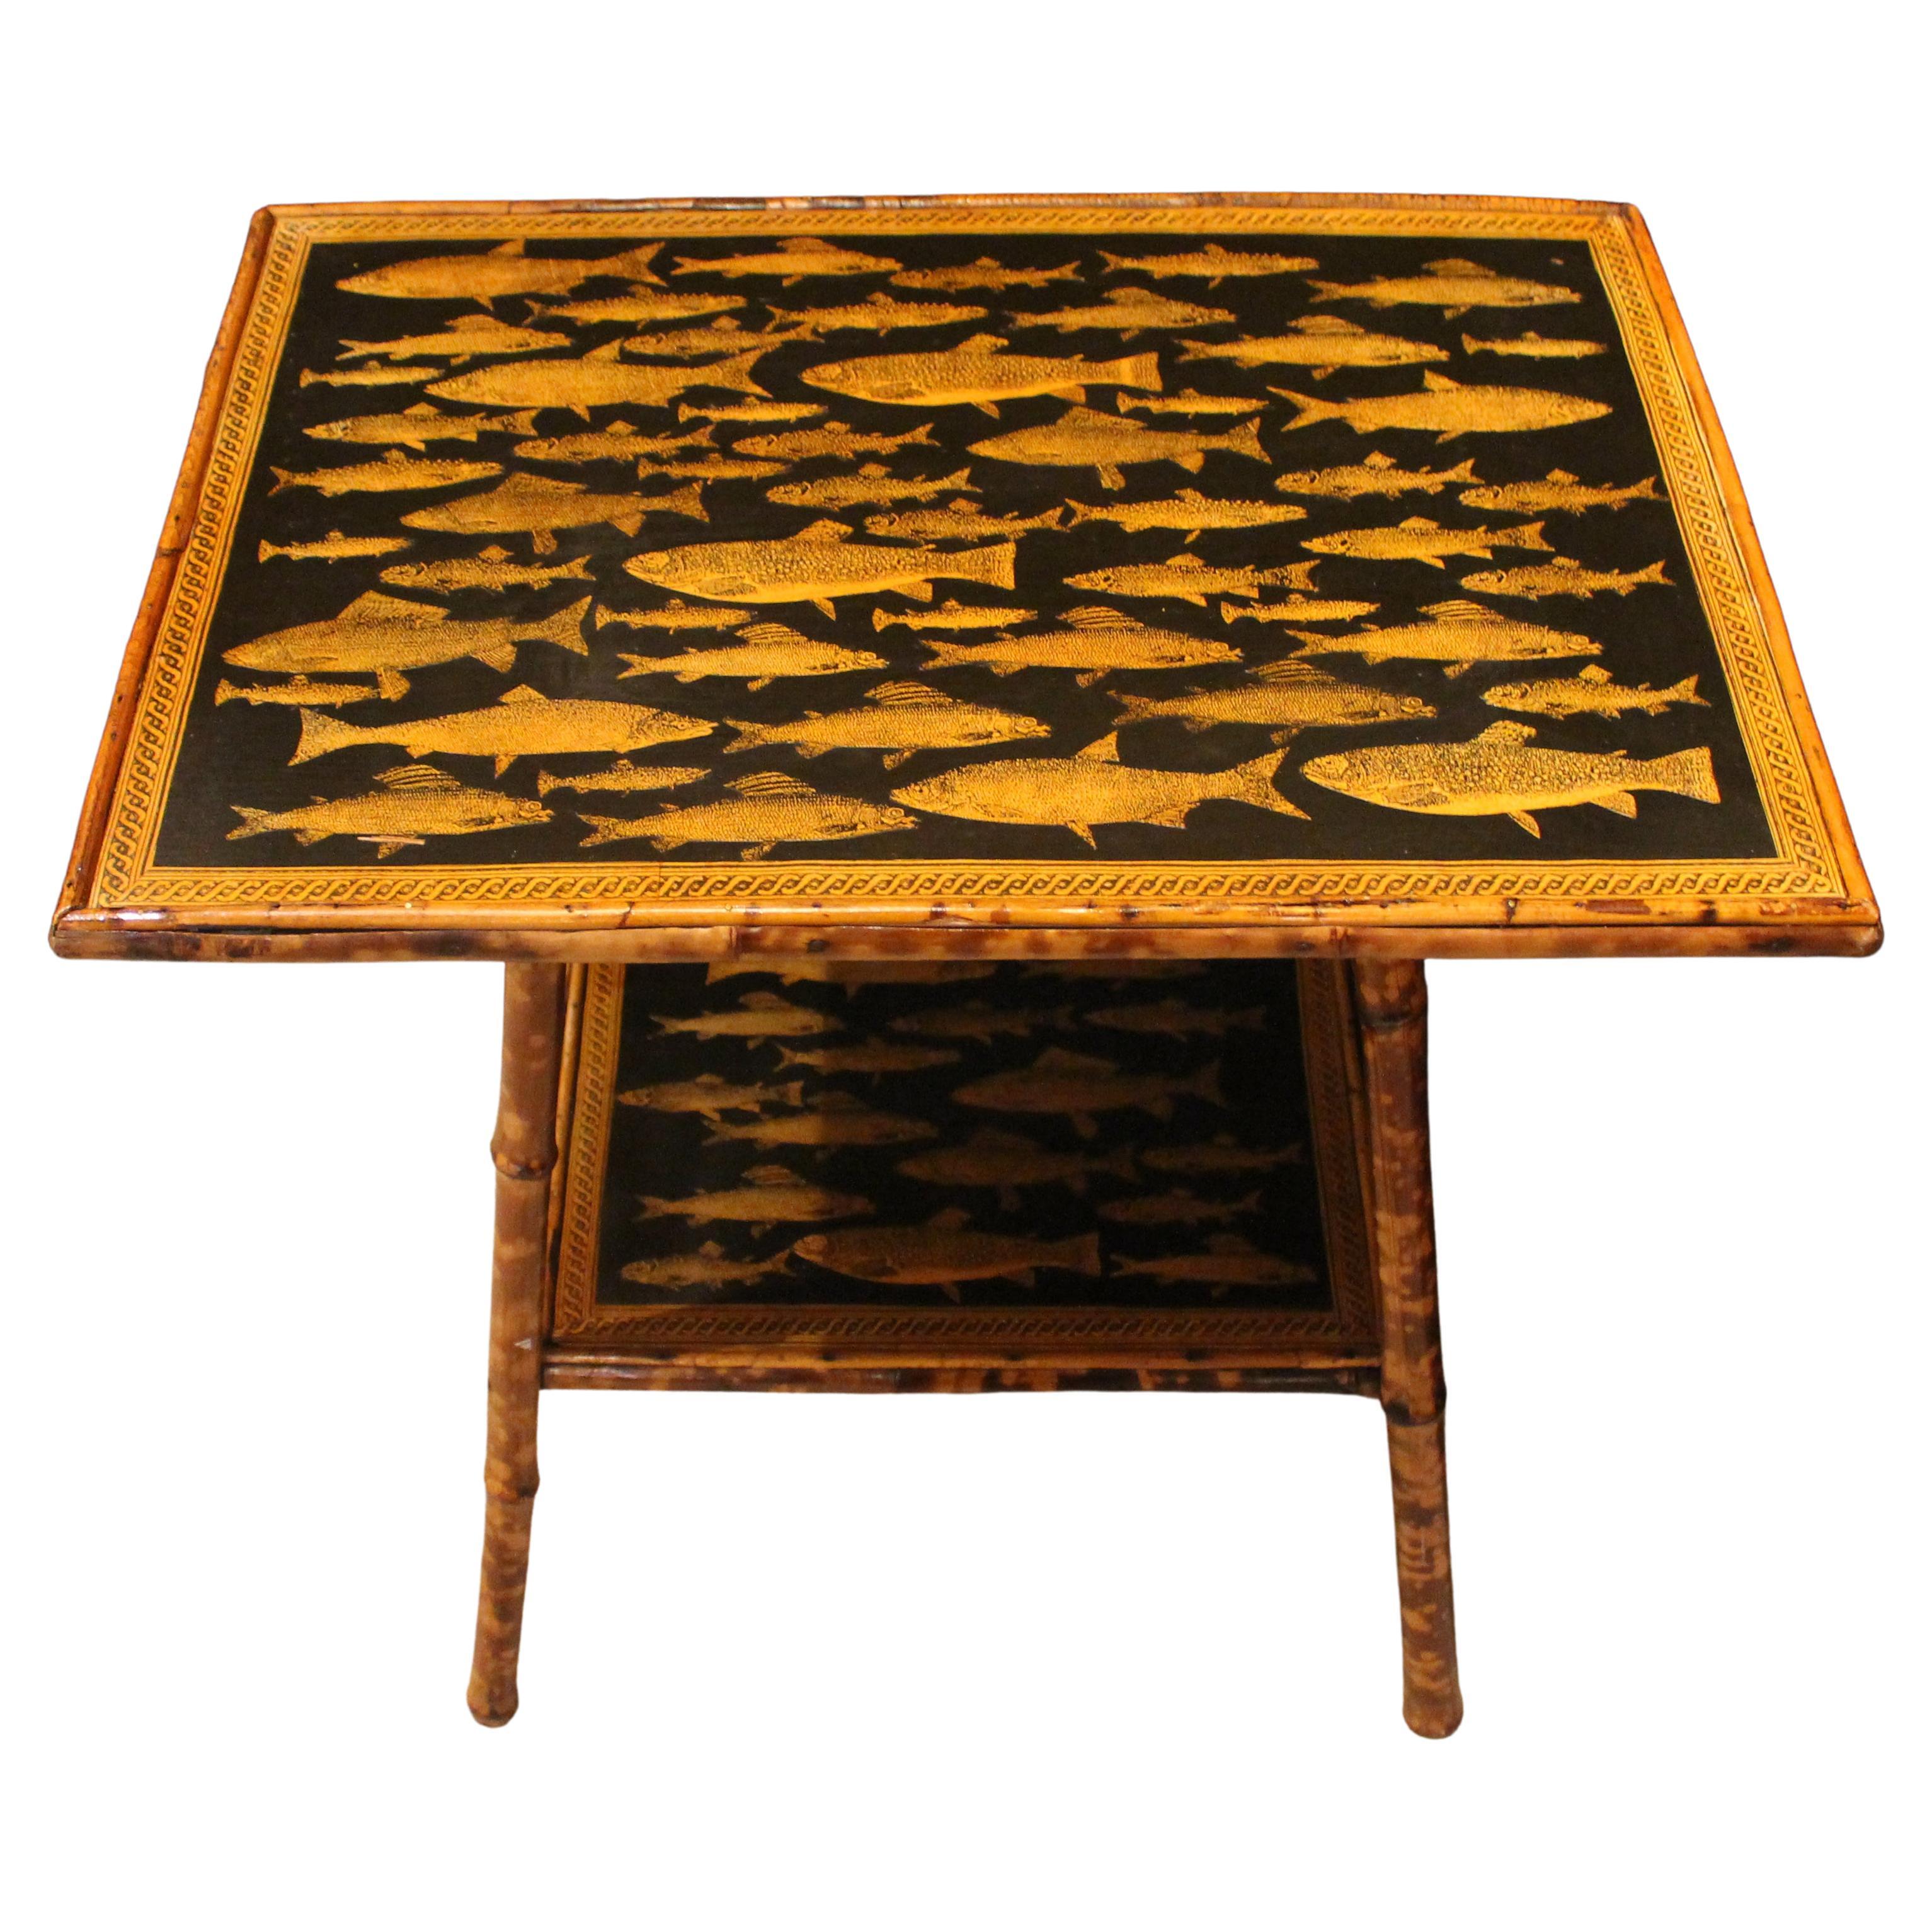 Circa 1880 English Bamboo Side Table